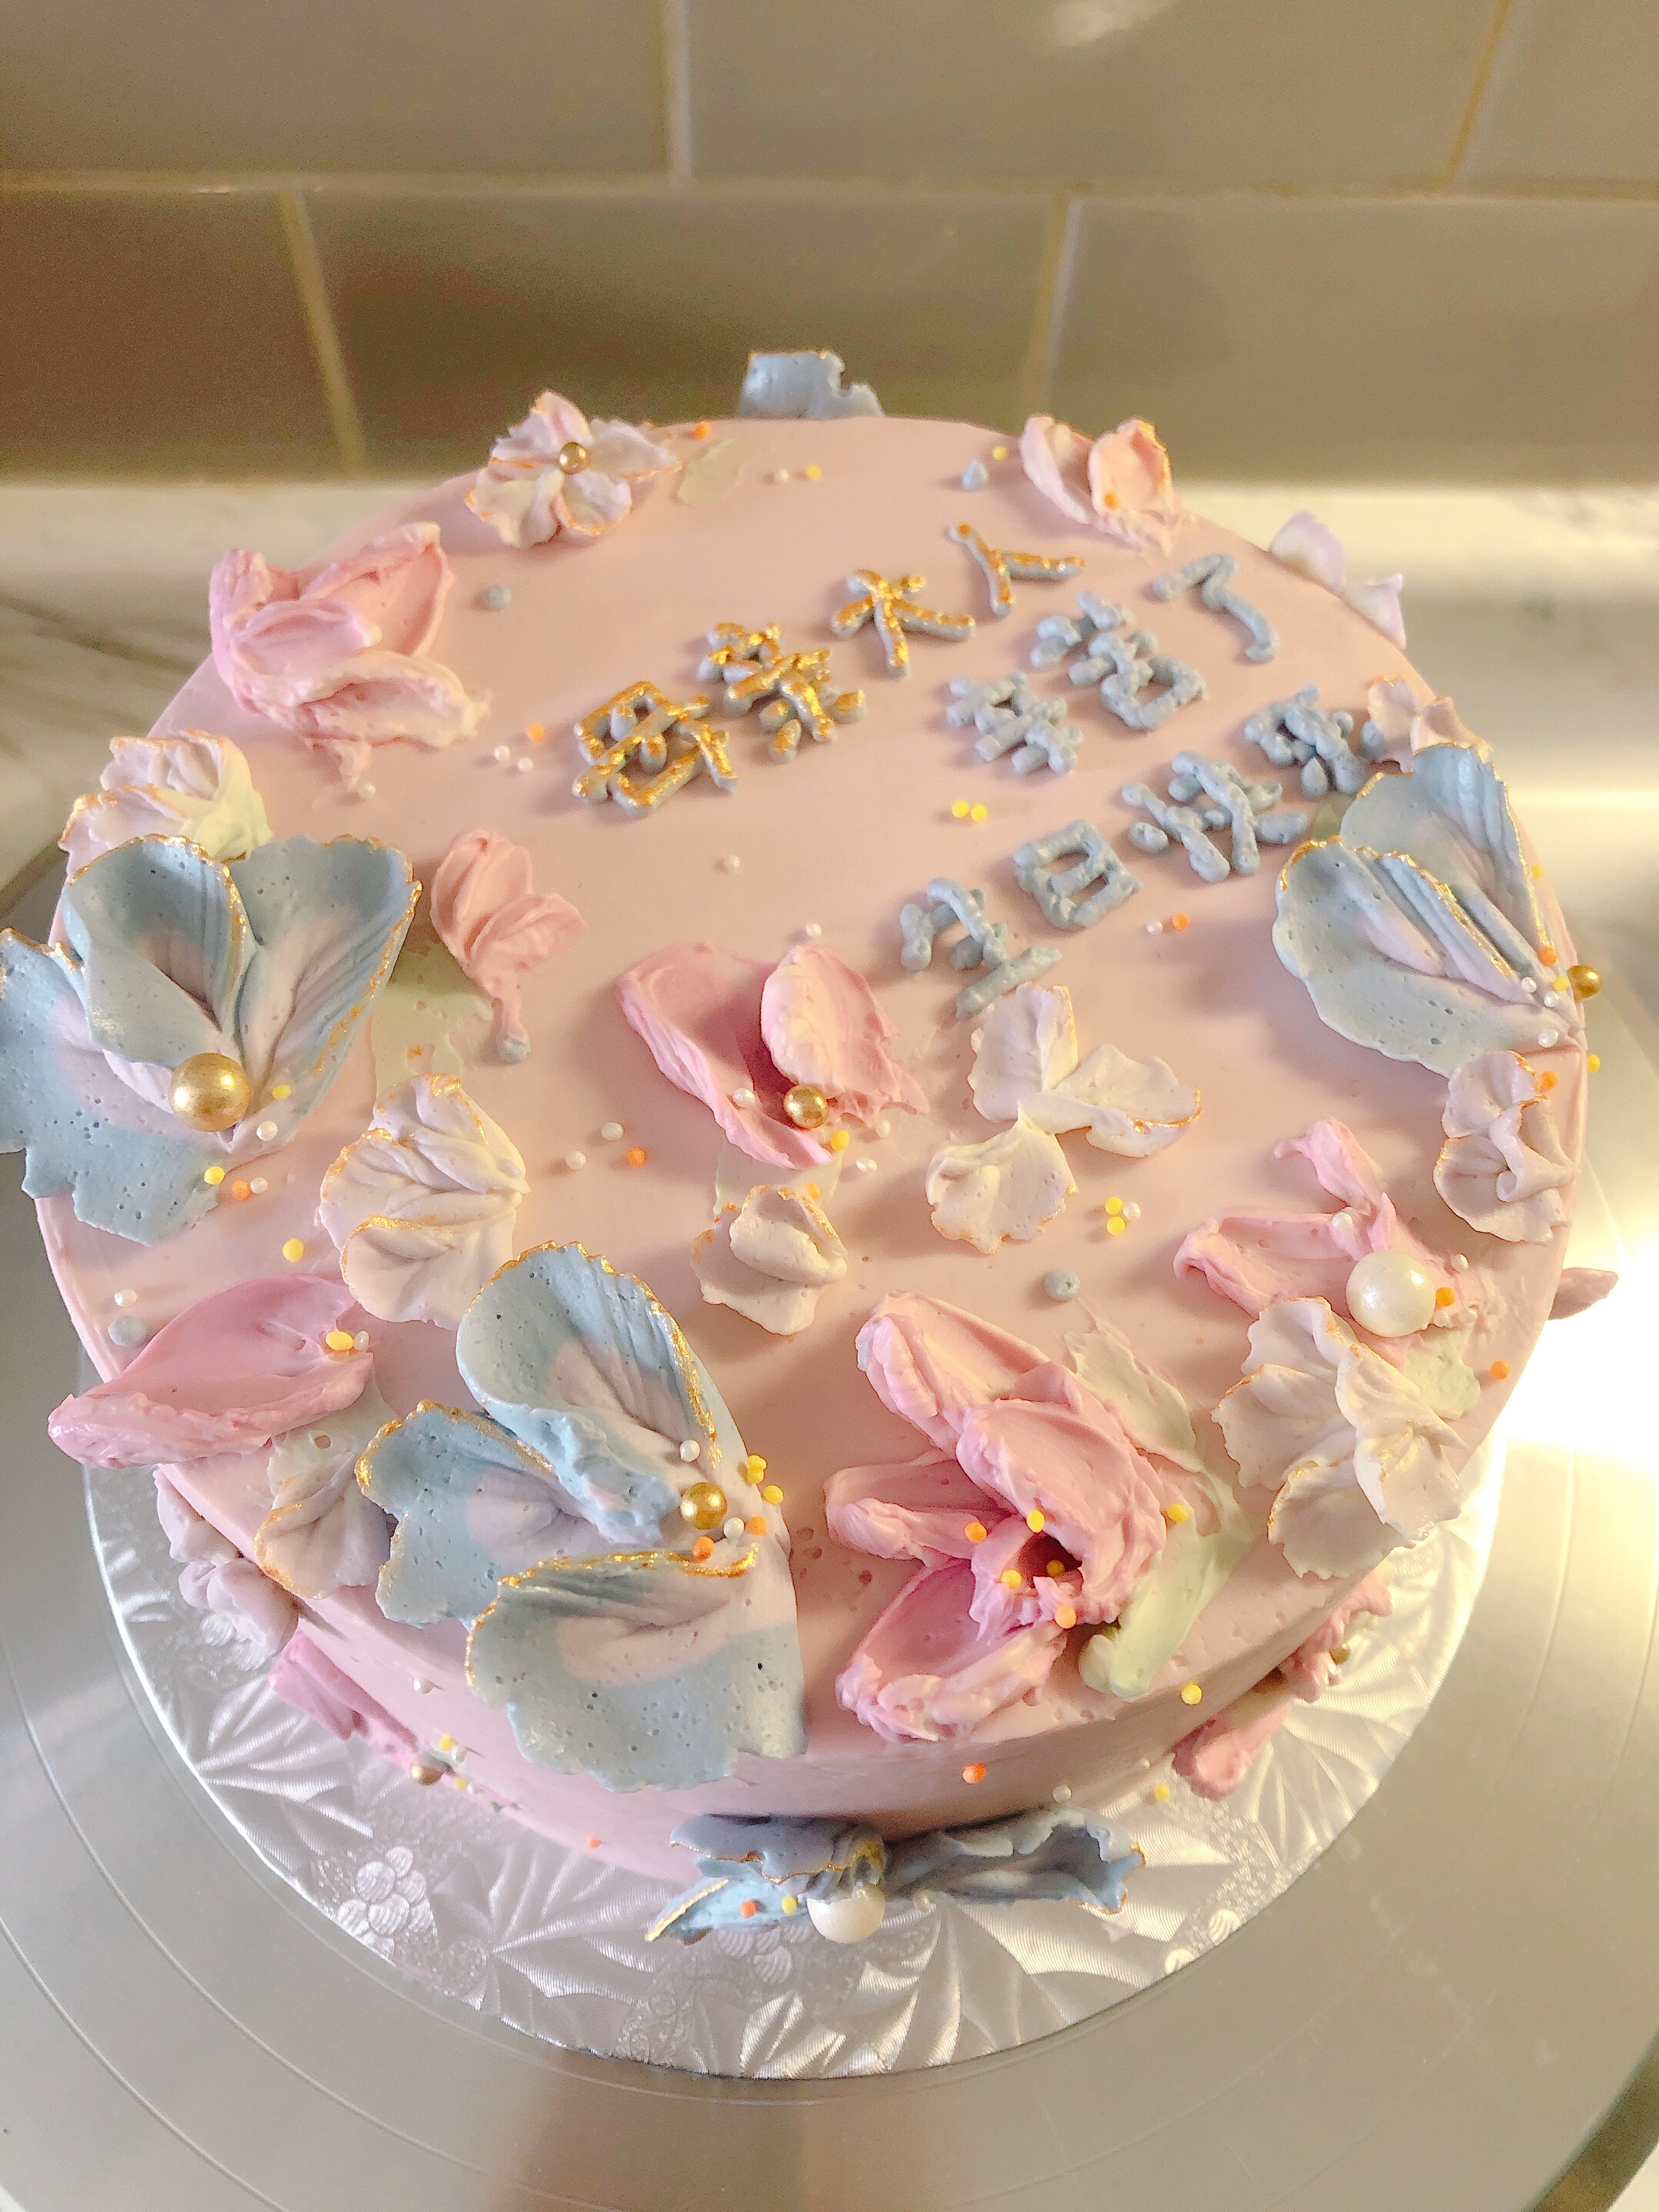 粉嫩优雅的雕绘设计蛋糕适合母亲节